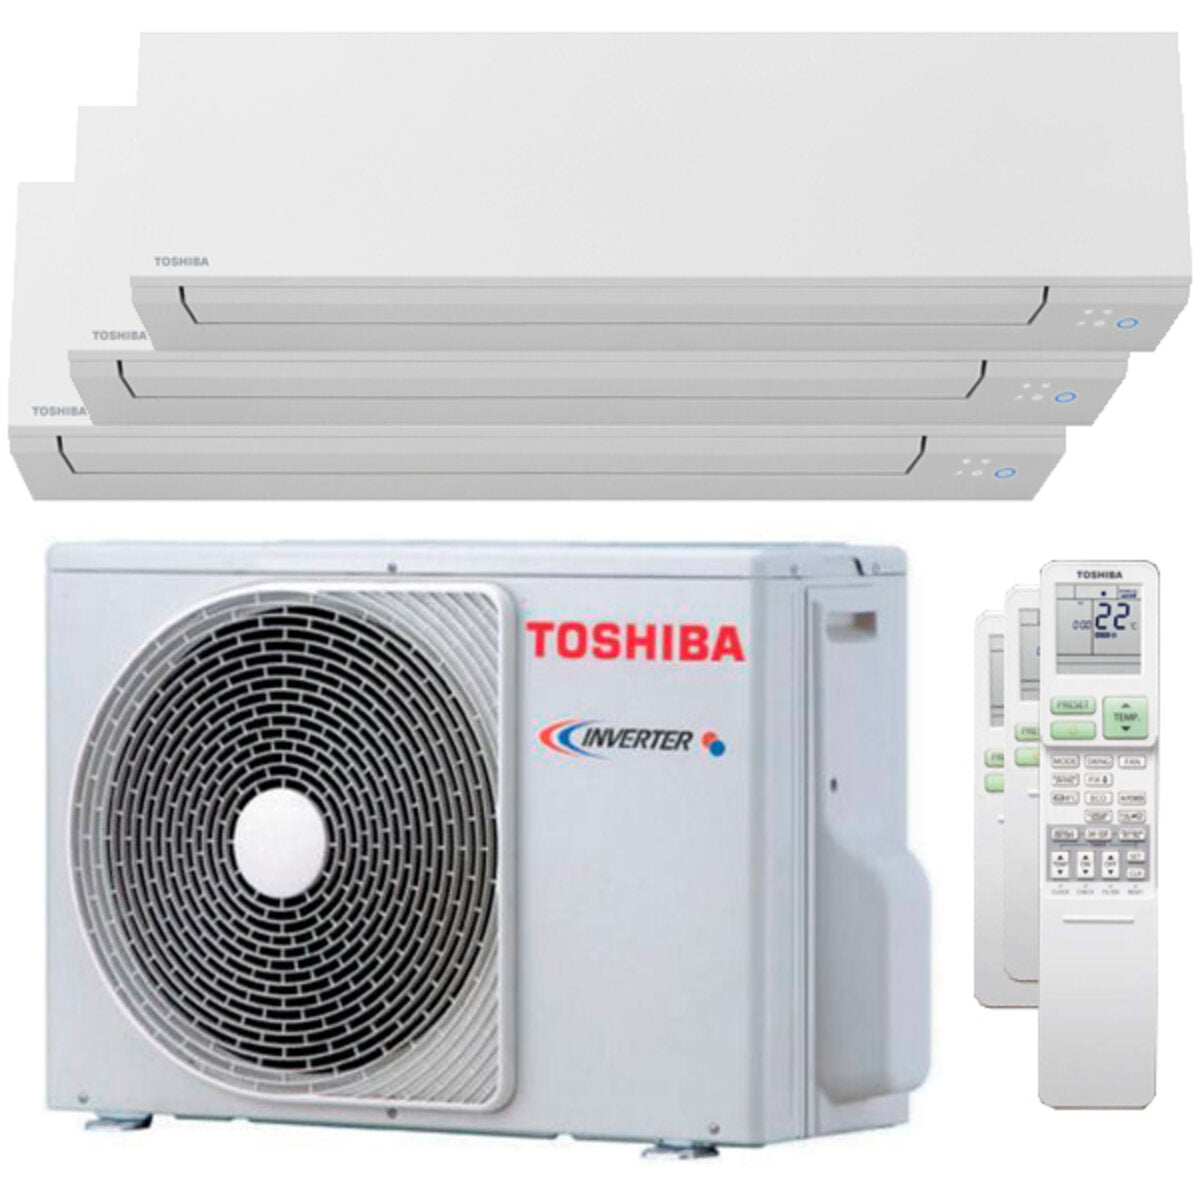 Toshiba SHORAI Edge Trial Split Klimaanlage 7000 + 7000 + 16000 BTU Wechselrichter A++ WLAN Außengerät 5,2 kW